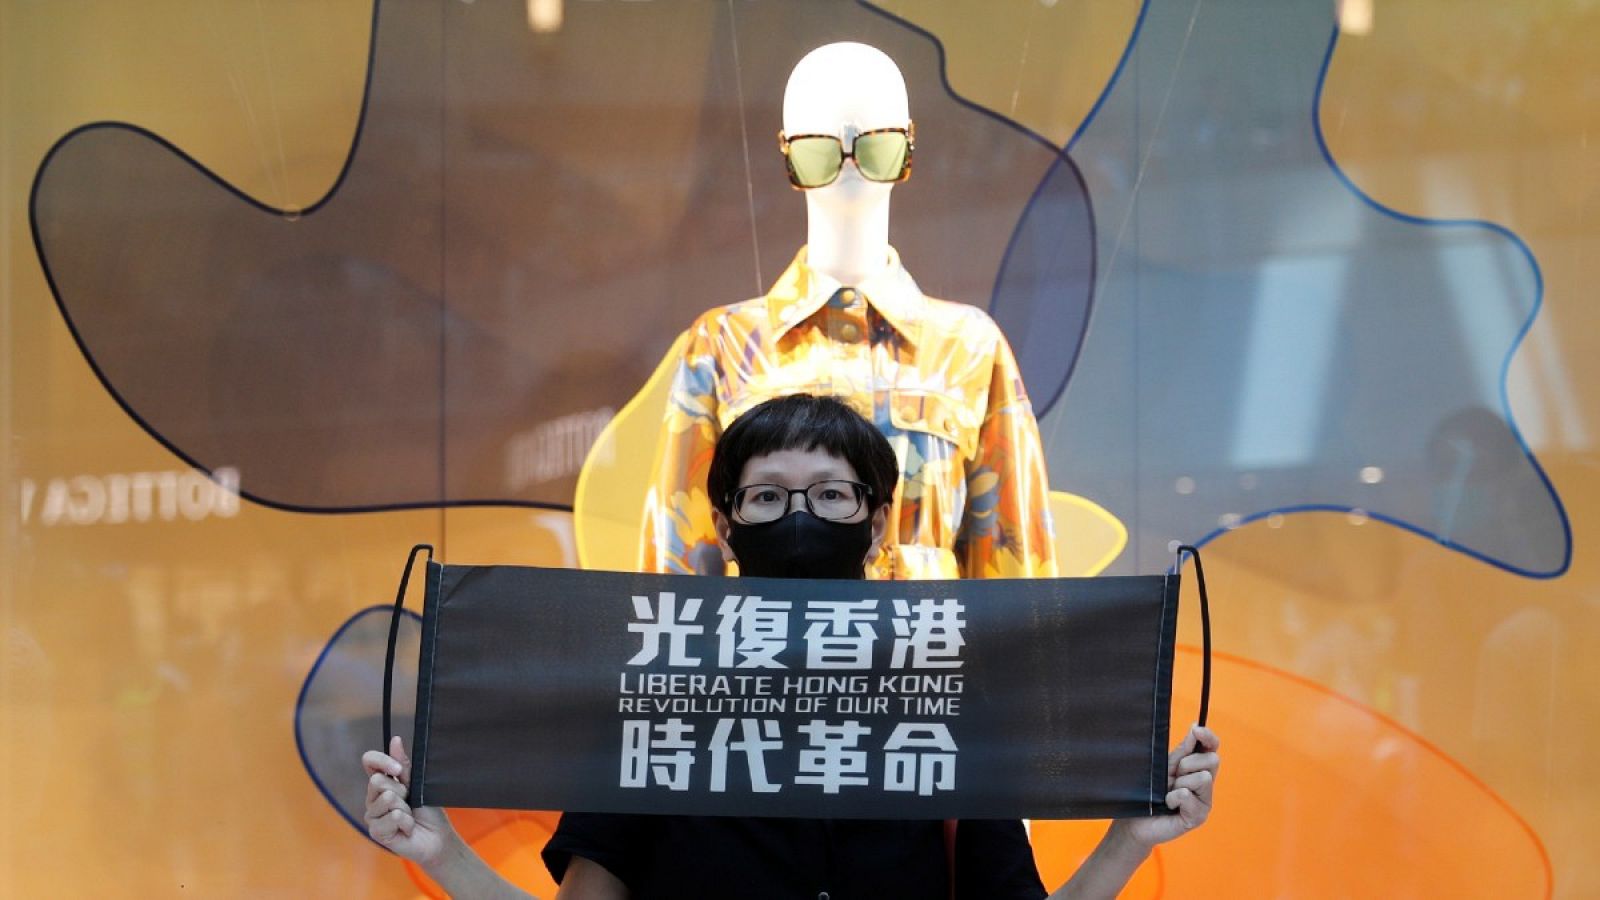 Un manifestante sostiene una pancarta con "Libera a Hong Kong, la Revolución de nuestro tiempo" en una protesta contra Pekín